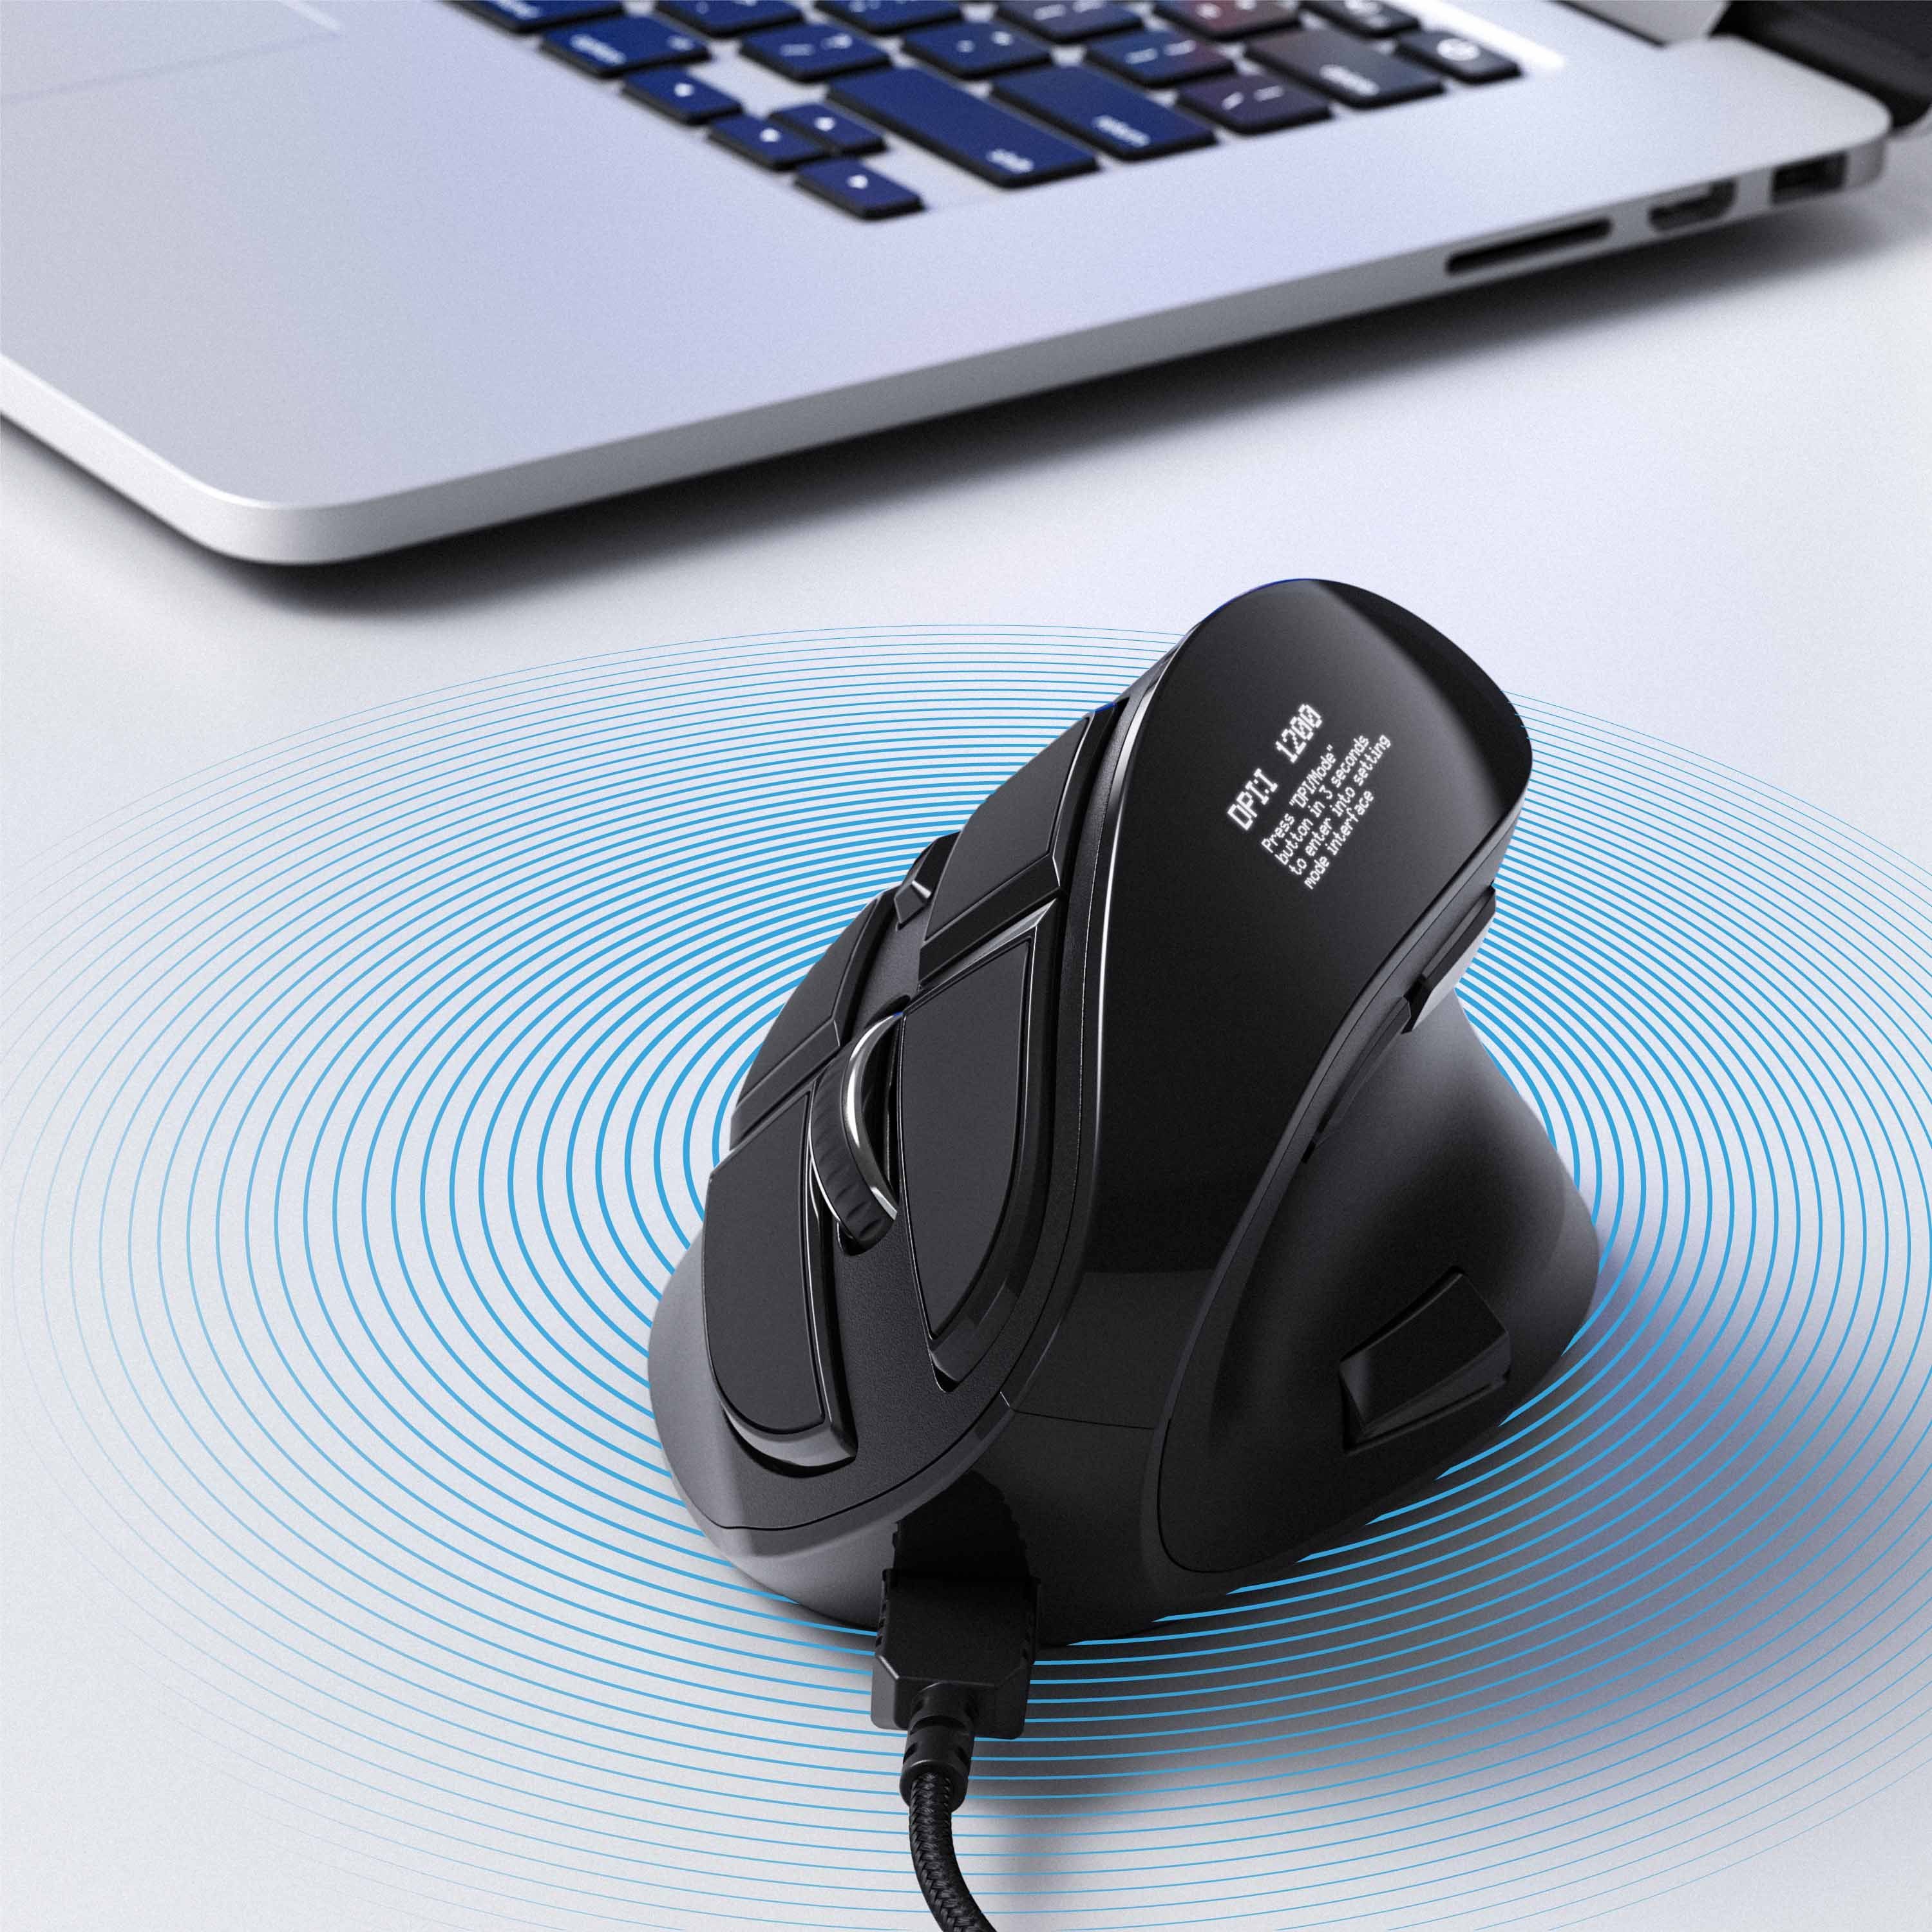 Tasten) Konfigurierbare 125 Maus mit ergonomische dpi, (kabelgebunden, OLED-Display Vertikal kabelgebunden CSL Maus